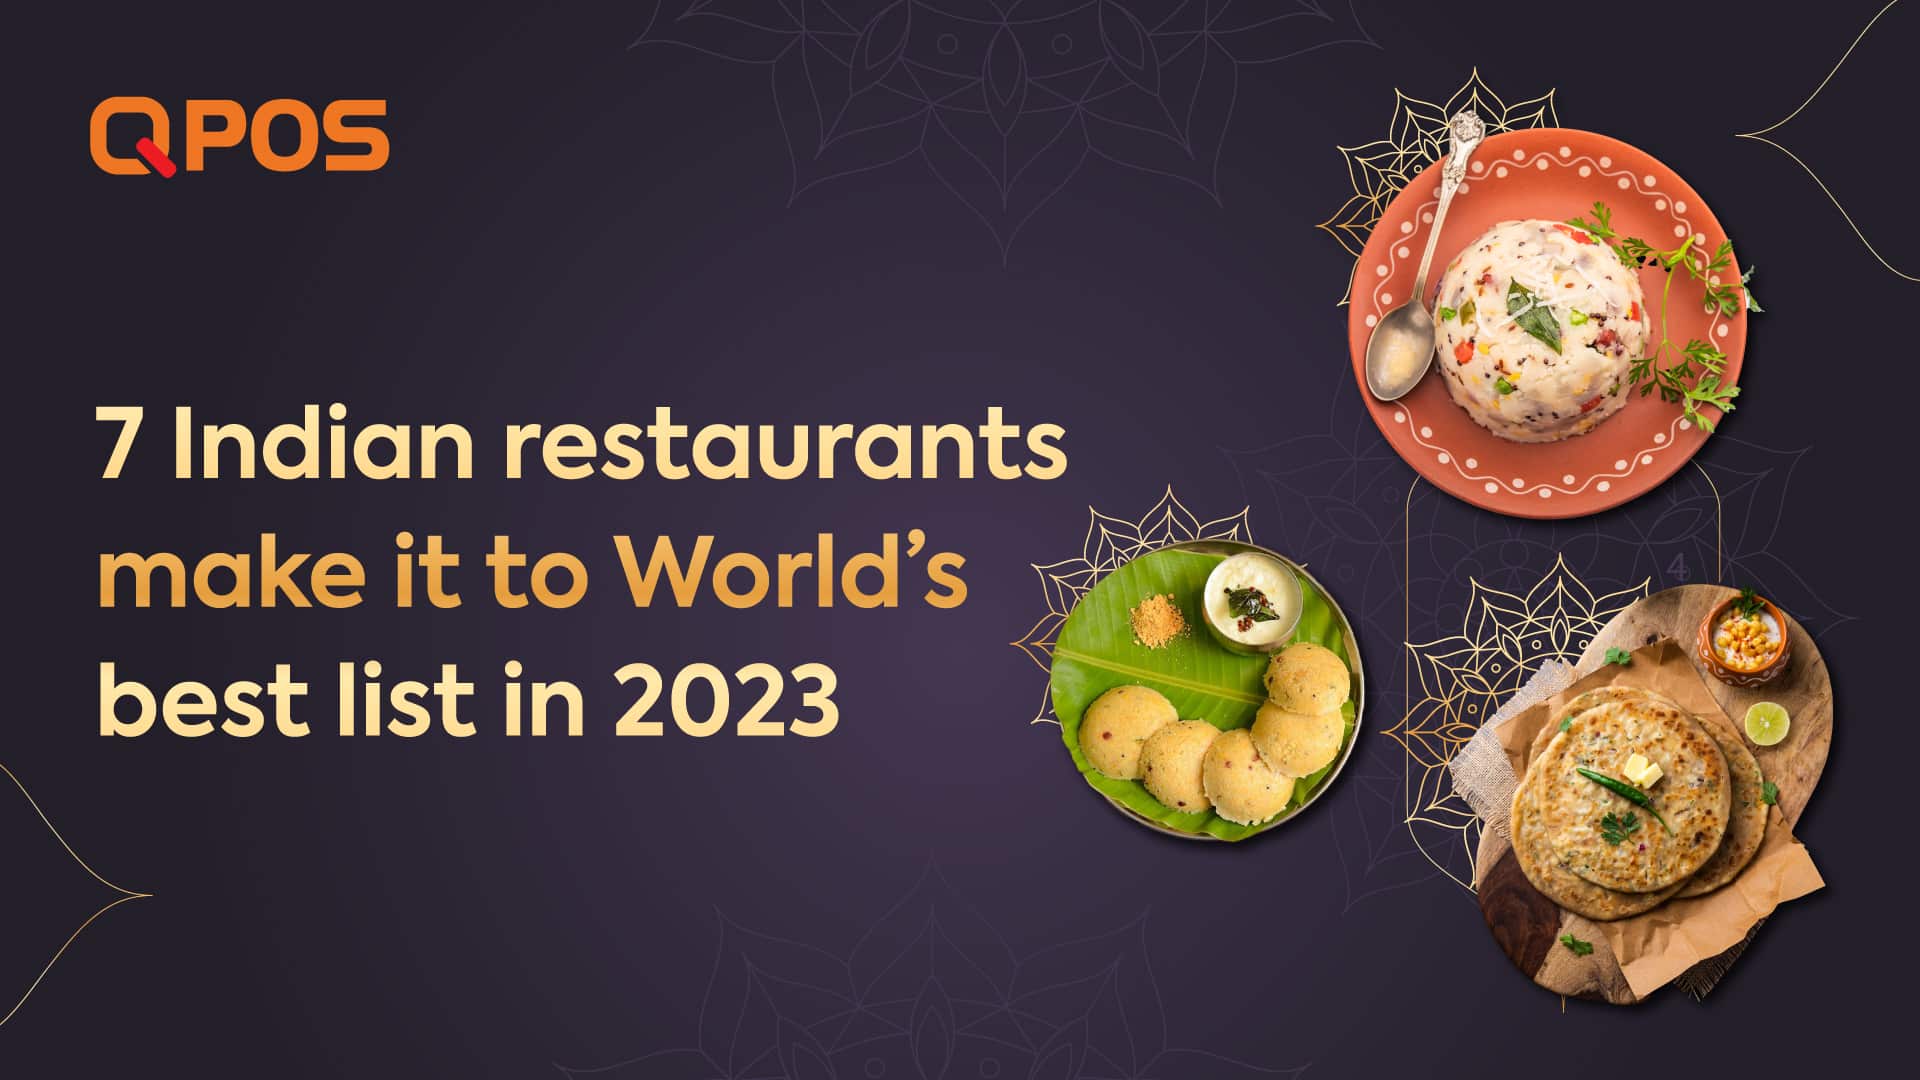 7 Indian restaurants make it to World’s best list in 2023!